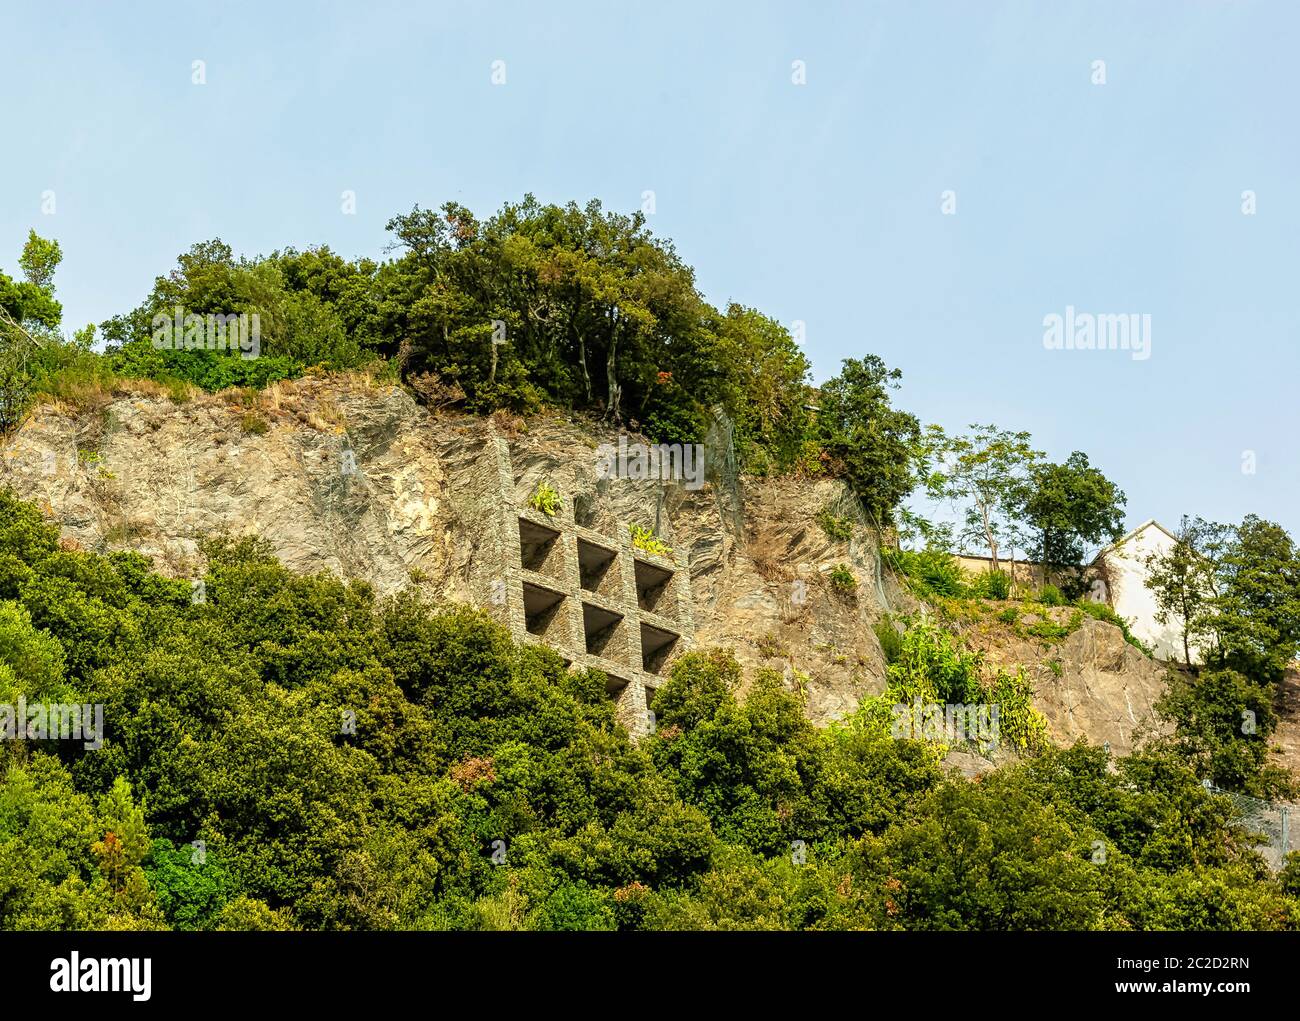 Structure spéciale pour soutenir la colline - Monterosso al Mare, Cinque Terre, Ligurie, Italie Banque D'Images